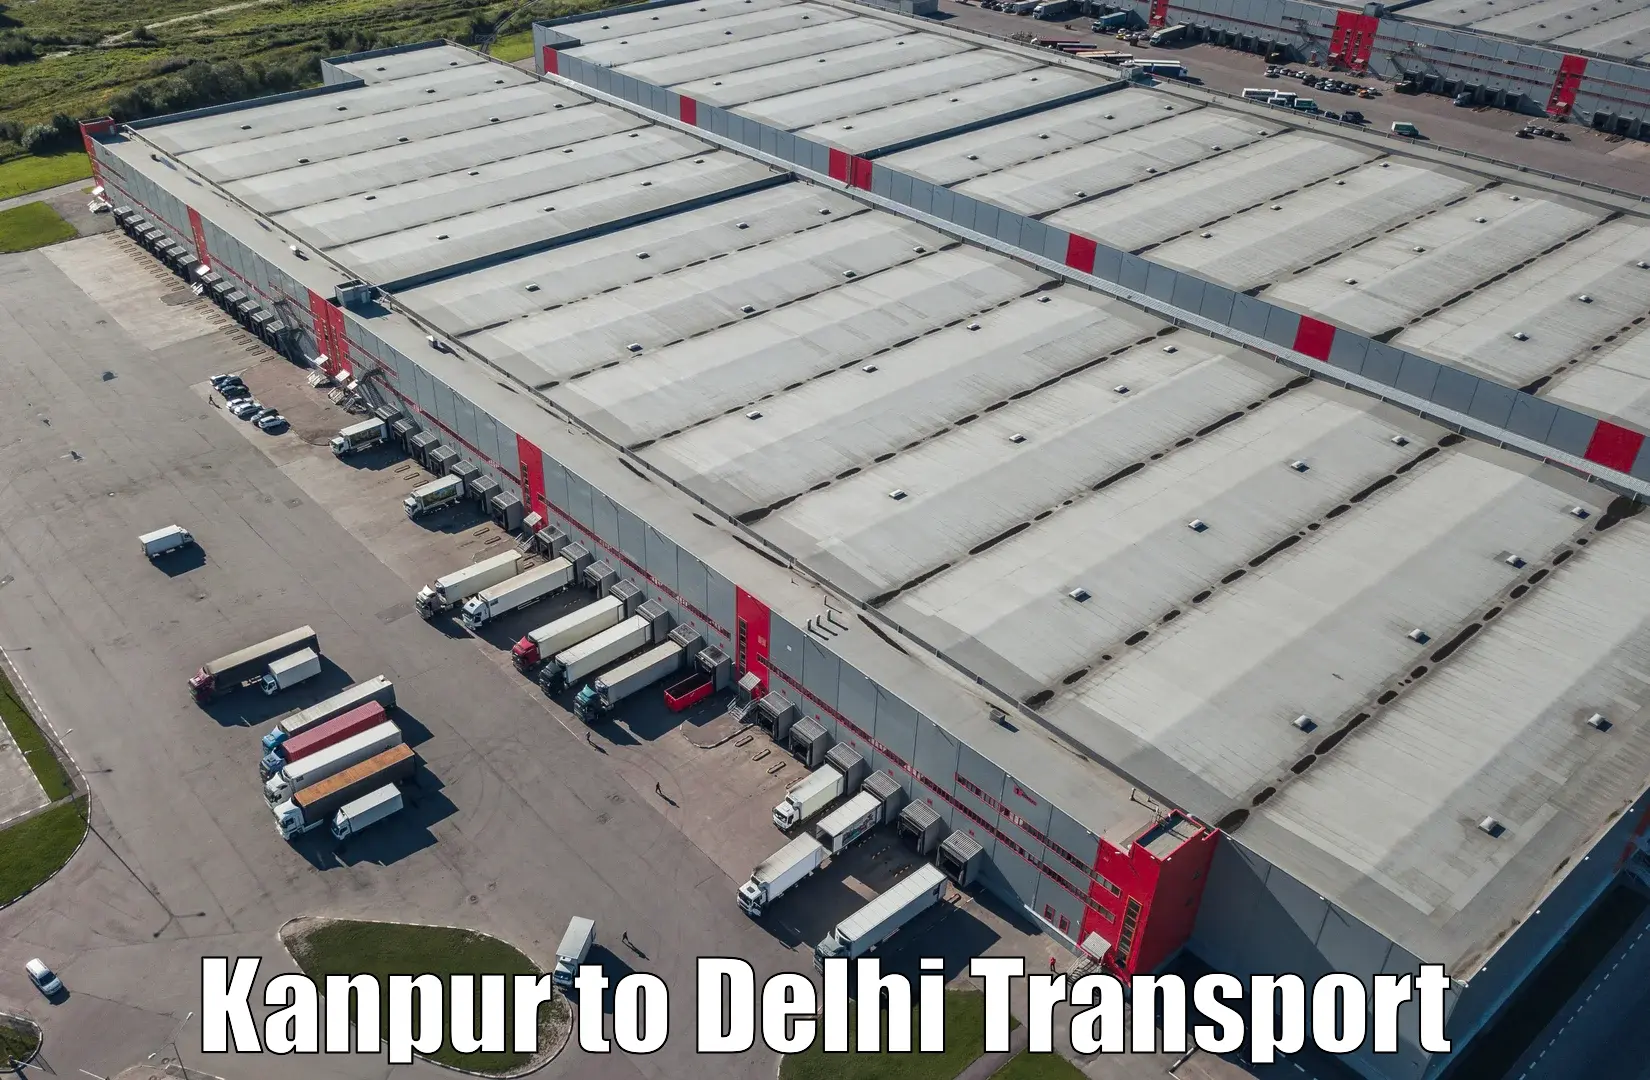 Bike transport service Kanpur to IIT Delhi